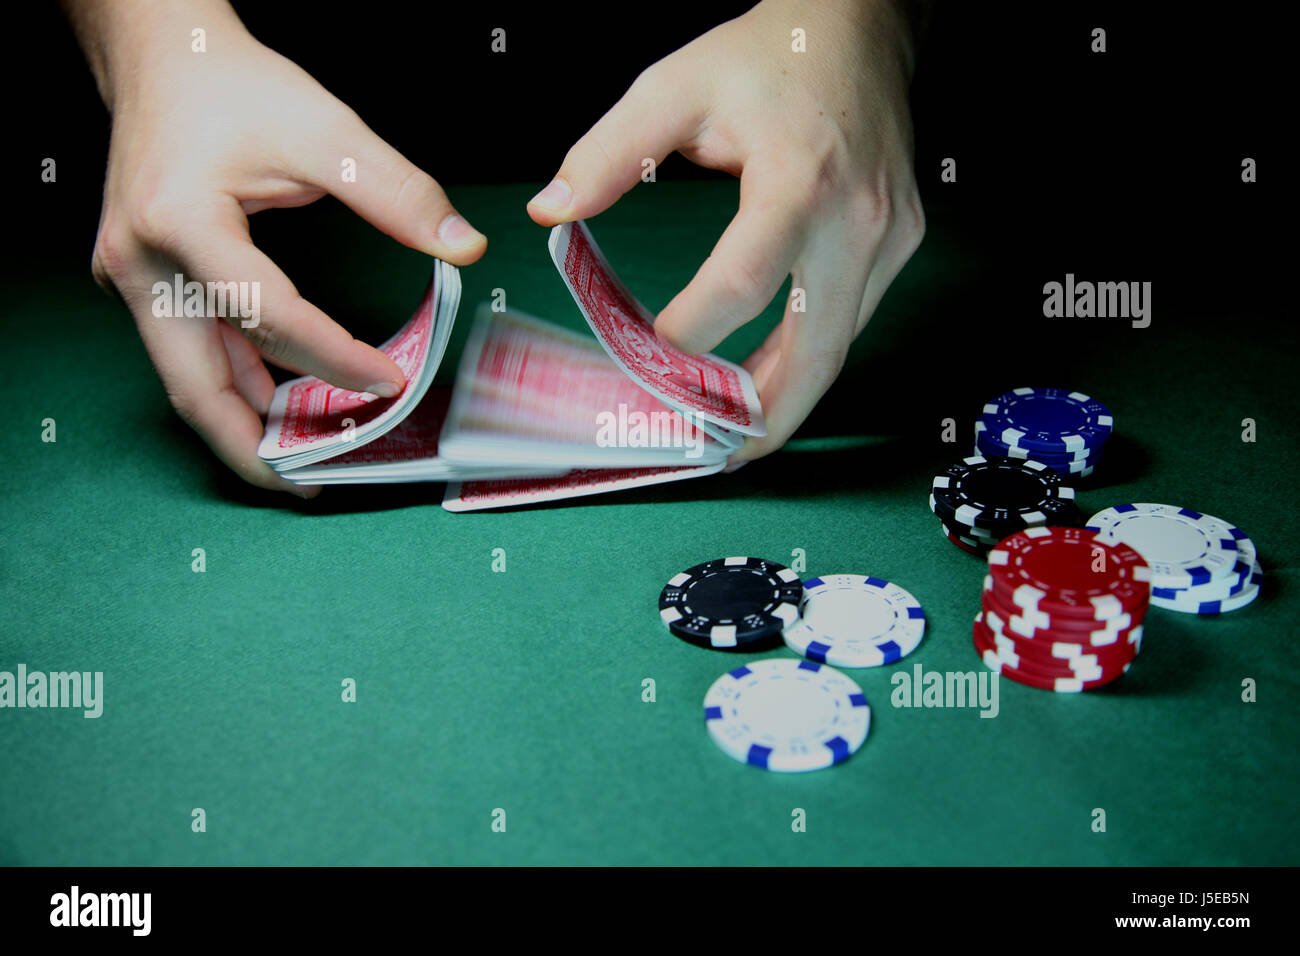 Main mains jeu de cartes jeu de hasard joueur de jeu de carte de pont face mix Banque D'Images